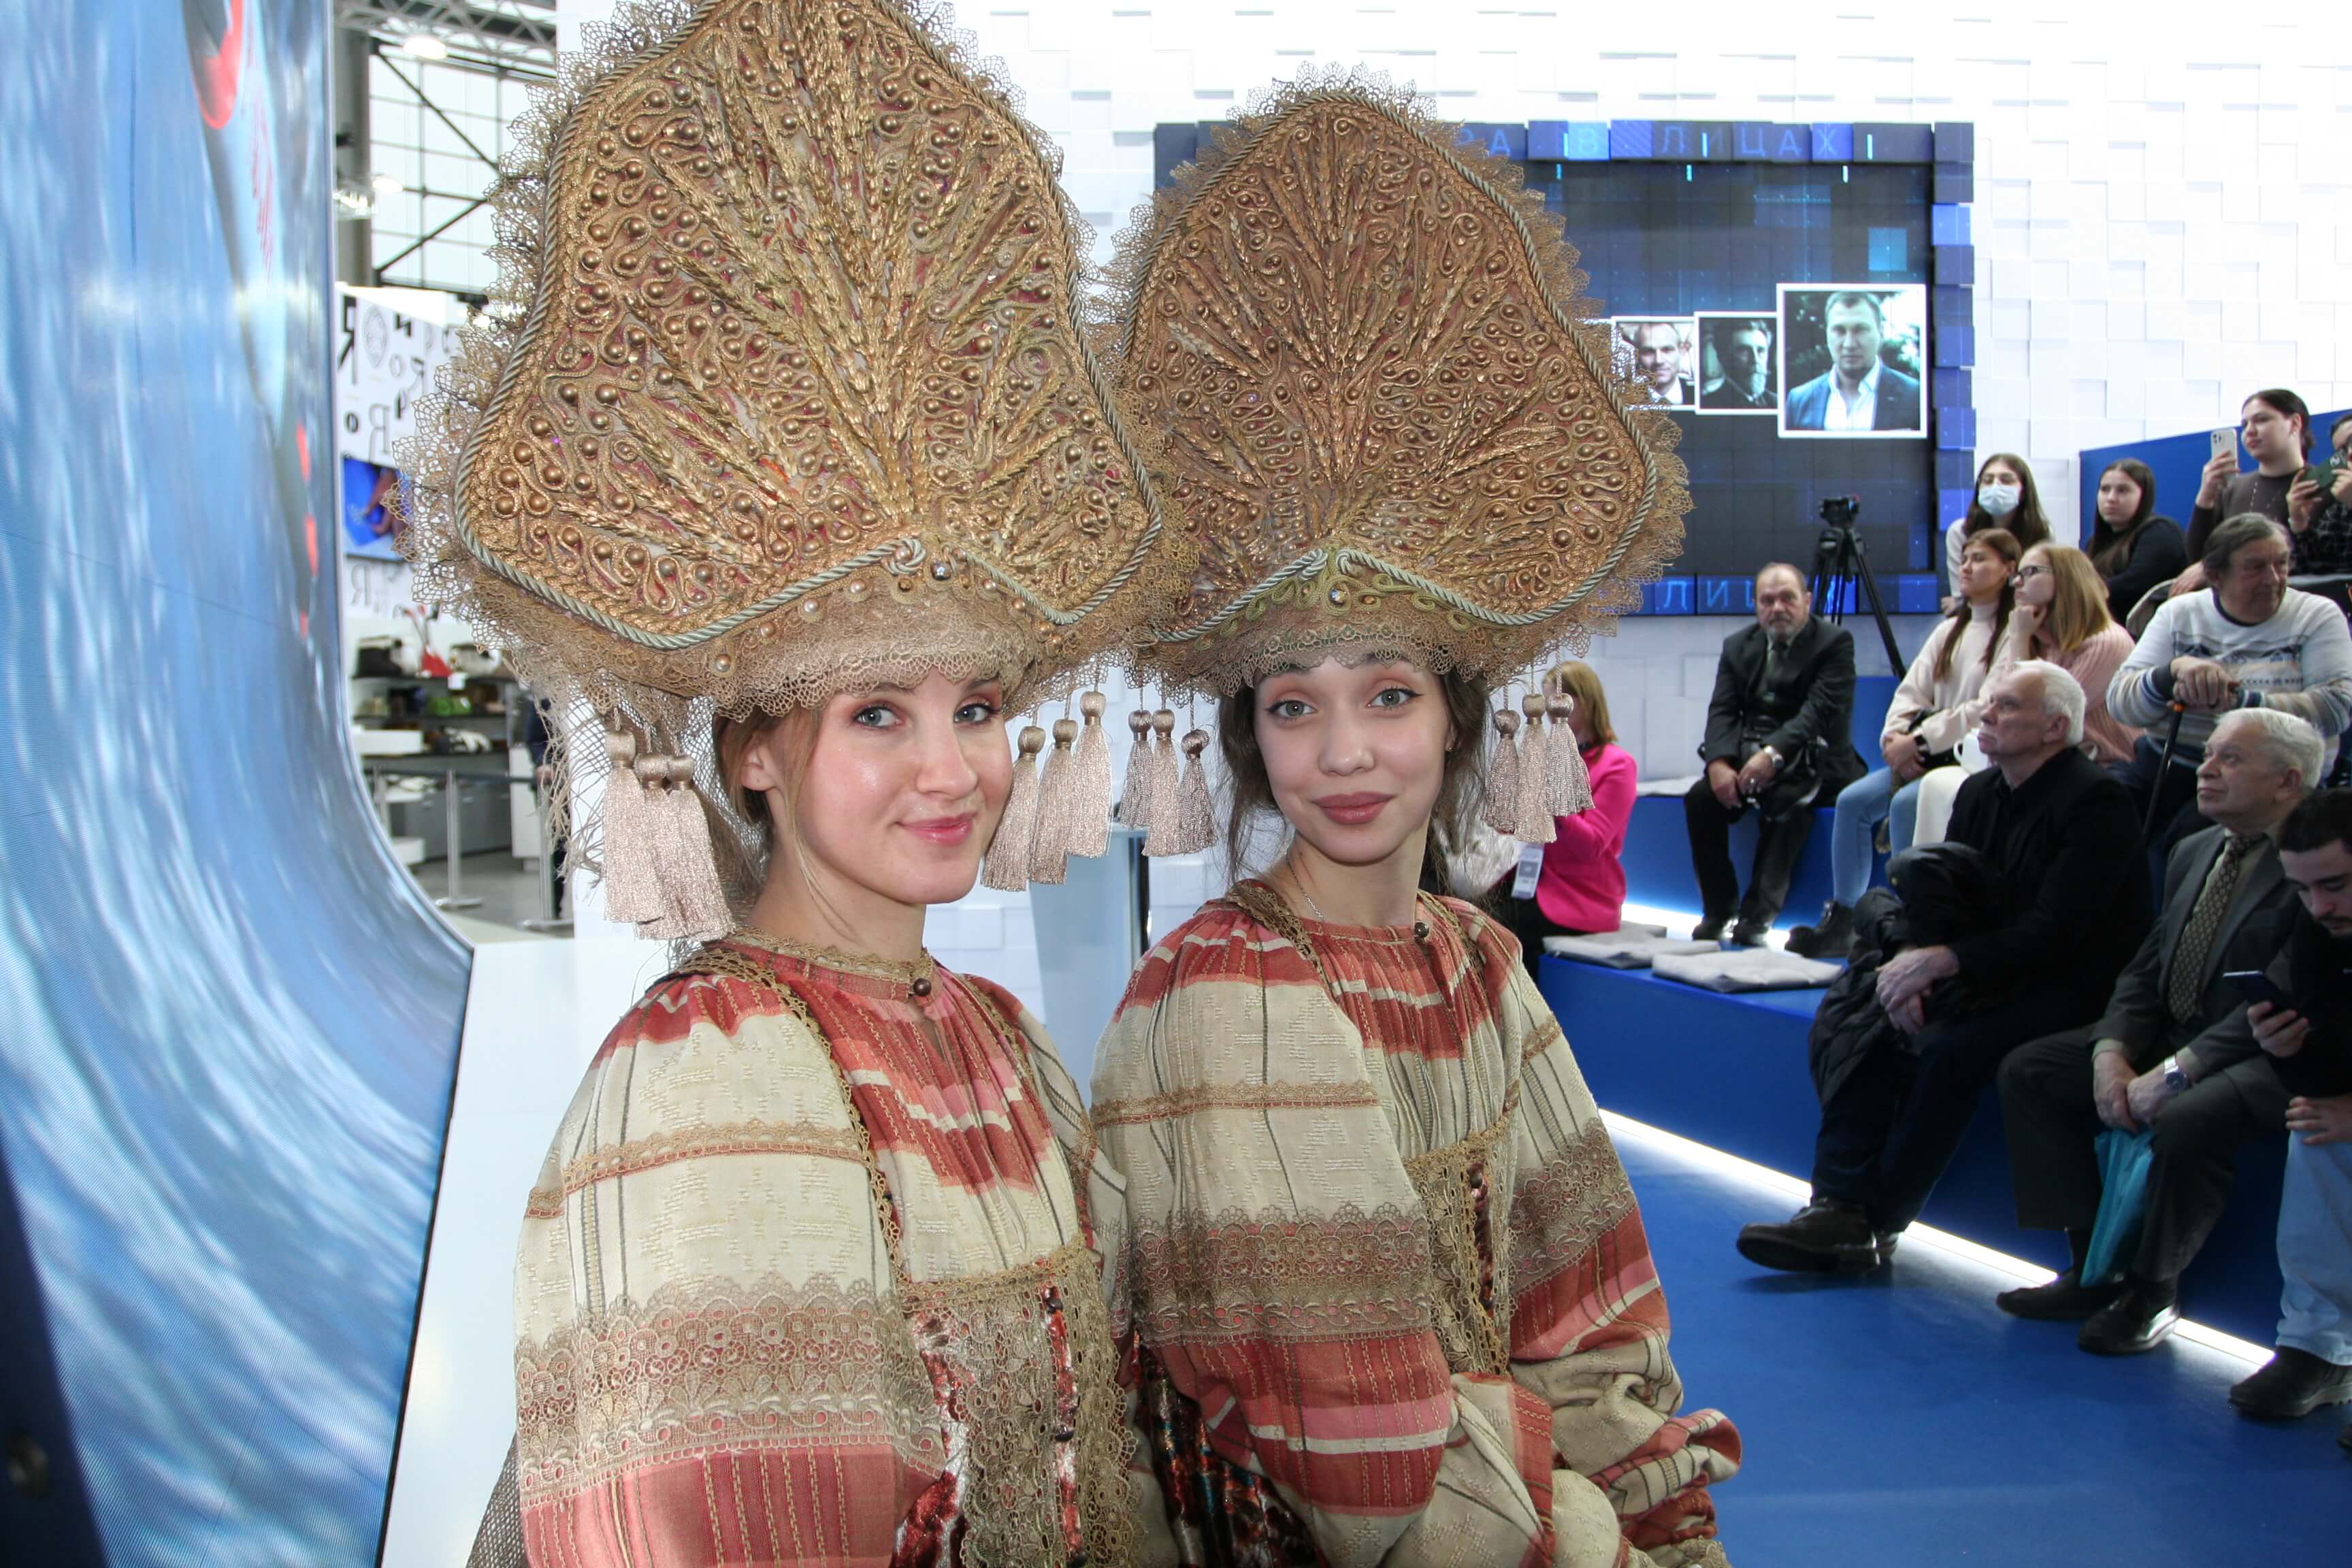 30 ноября 2023 года на Международной выставке-форуме "Россия" прошёл День Самарской области